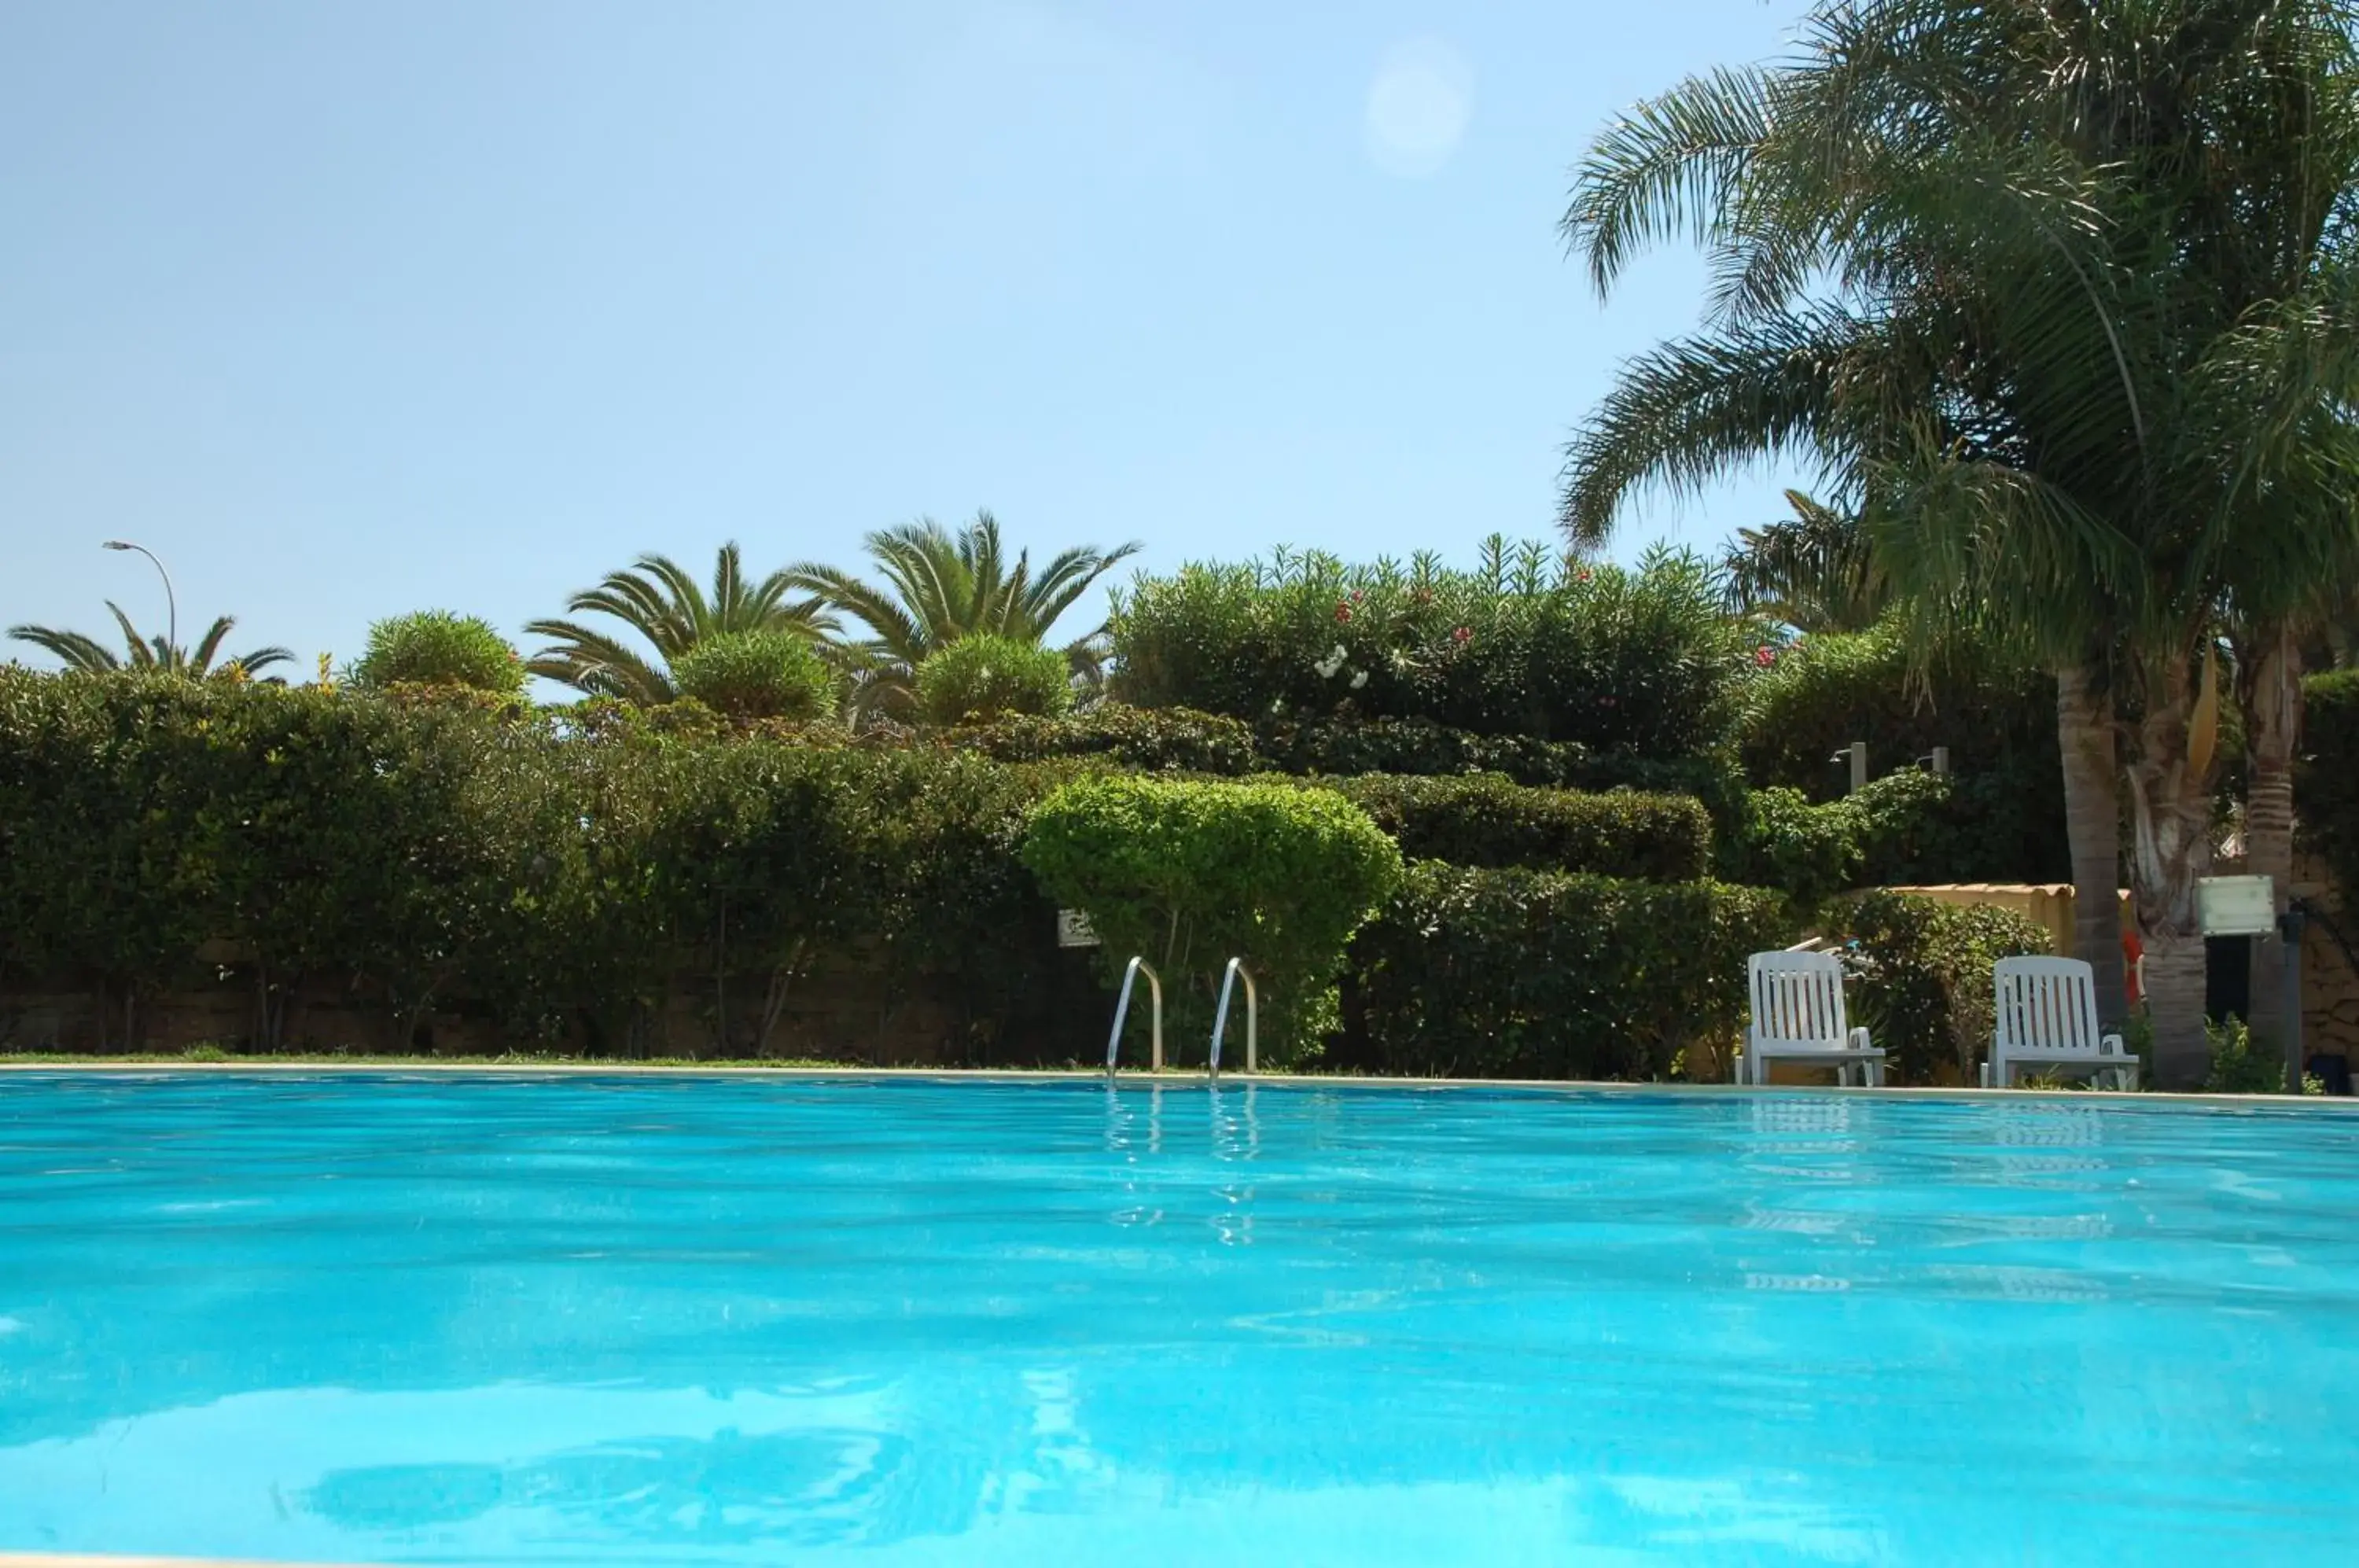 Swimming Pool in Andrea Doria Hotel